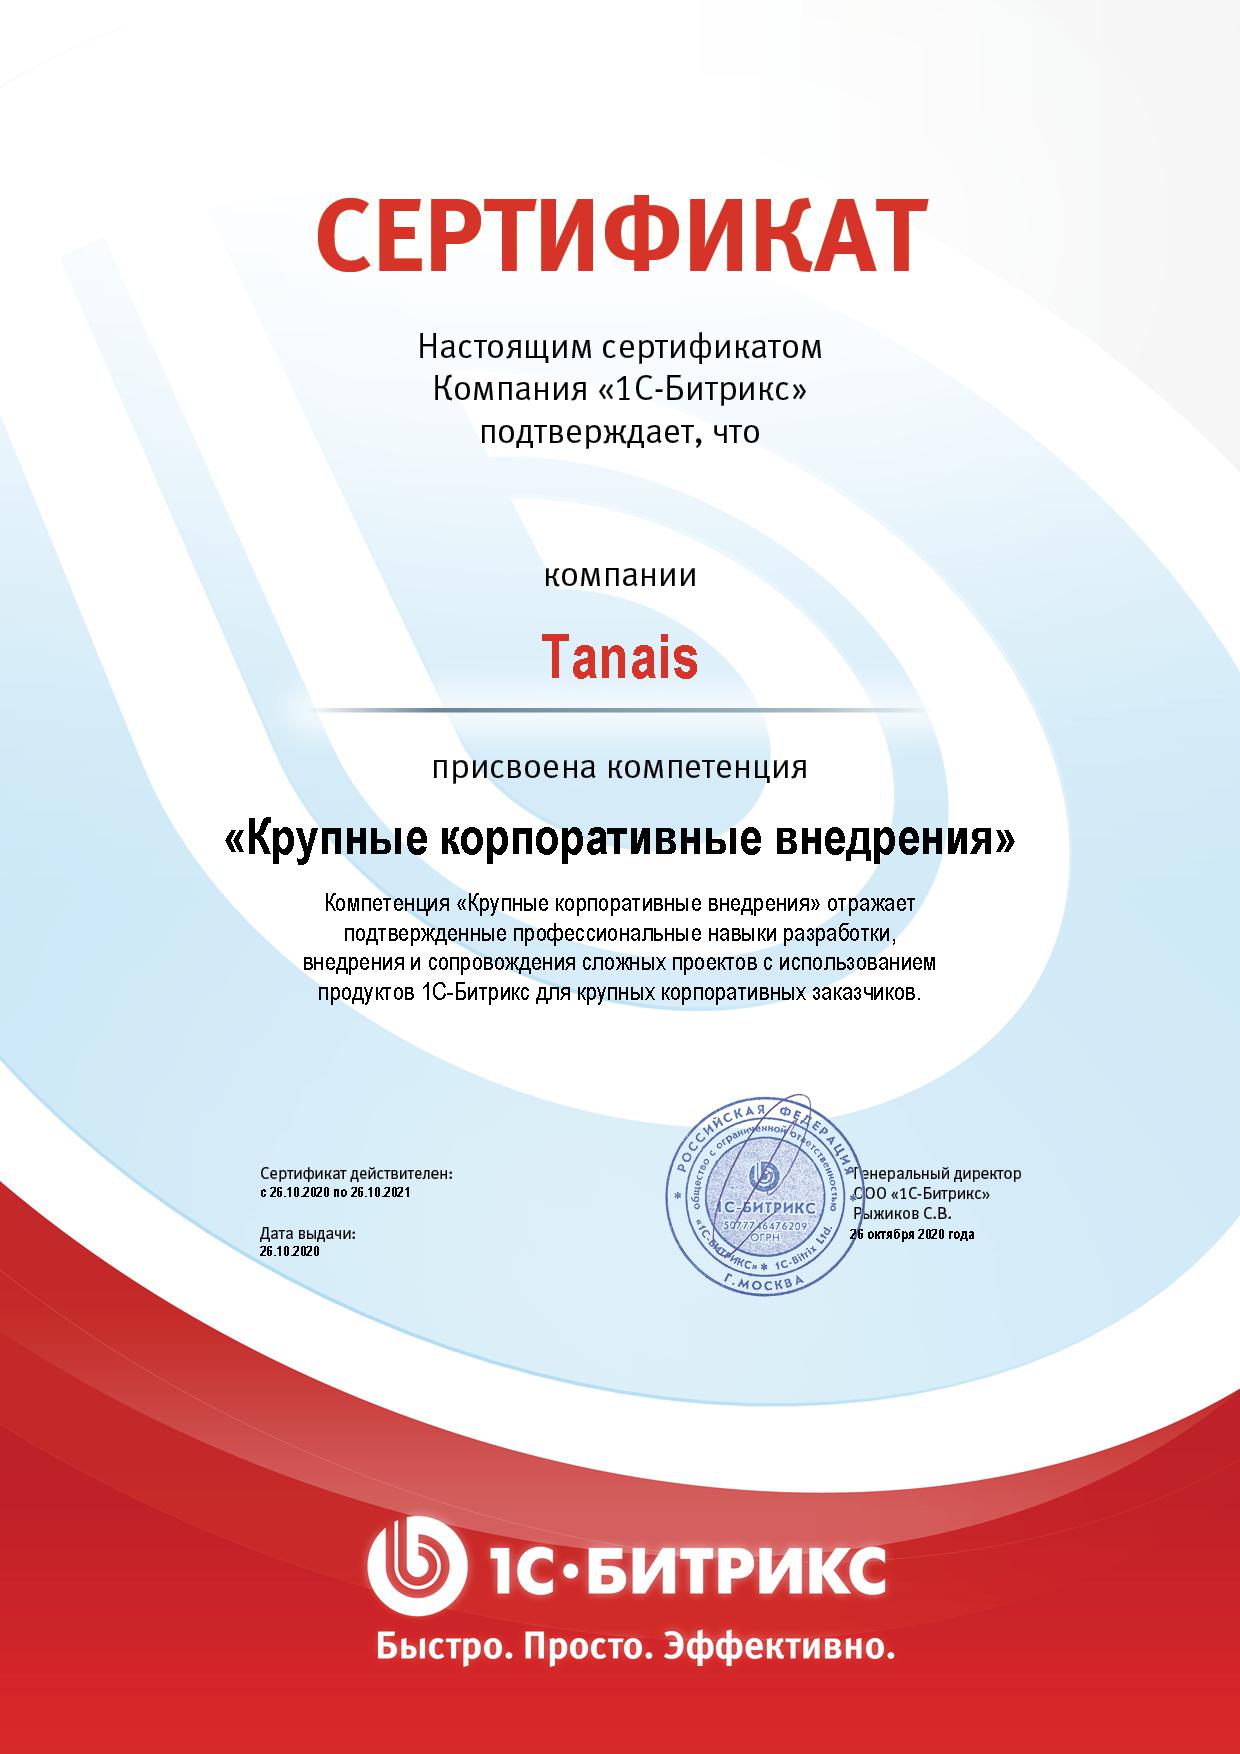 Сертификат присвоения компетенции "Крупные корпоративные внедрения"